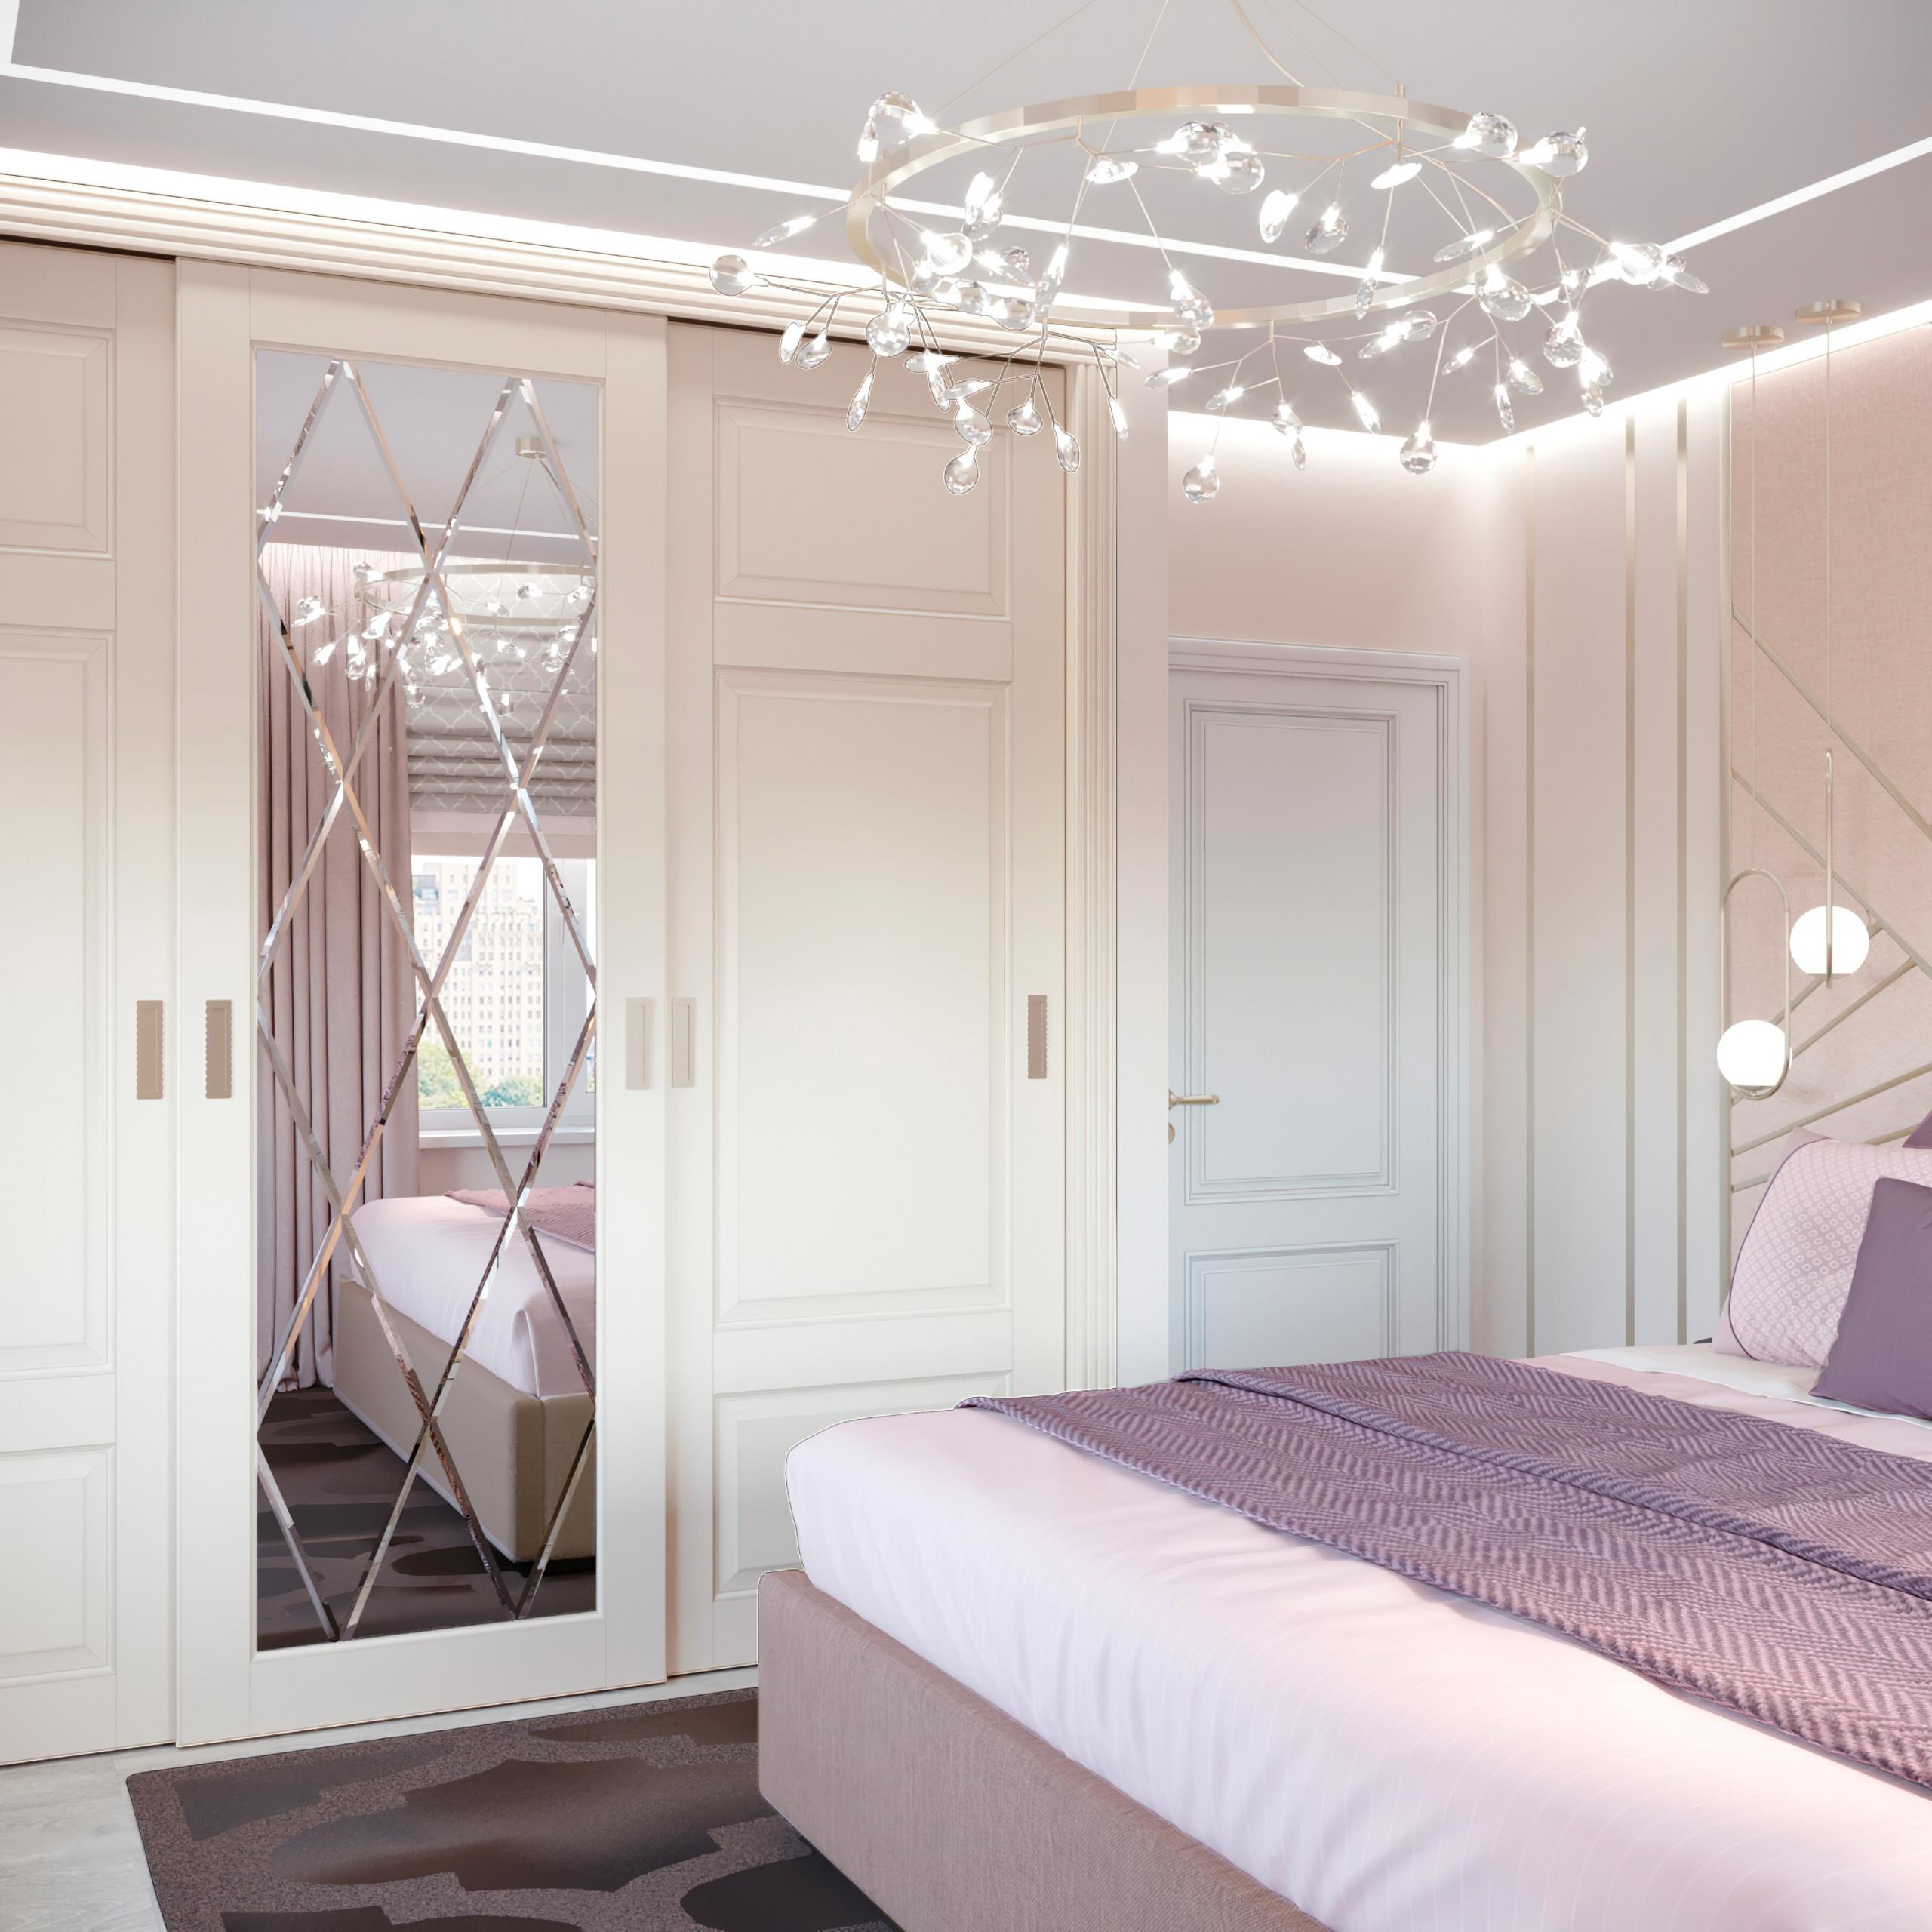 Интерьер спальни cветовыми линиями, подсветкой настенной, подсветкой светодиодной, светильниками над кроватью и с подсветкой в неоклассике